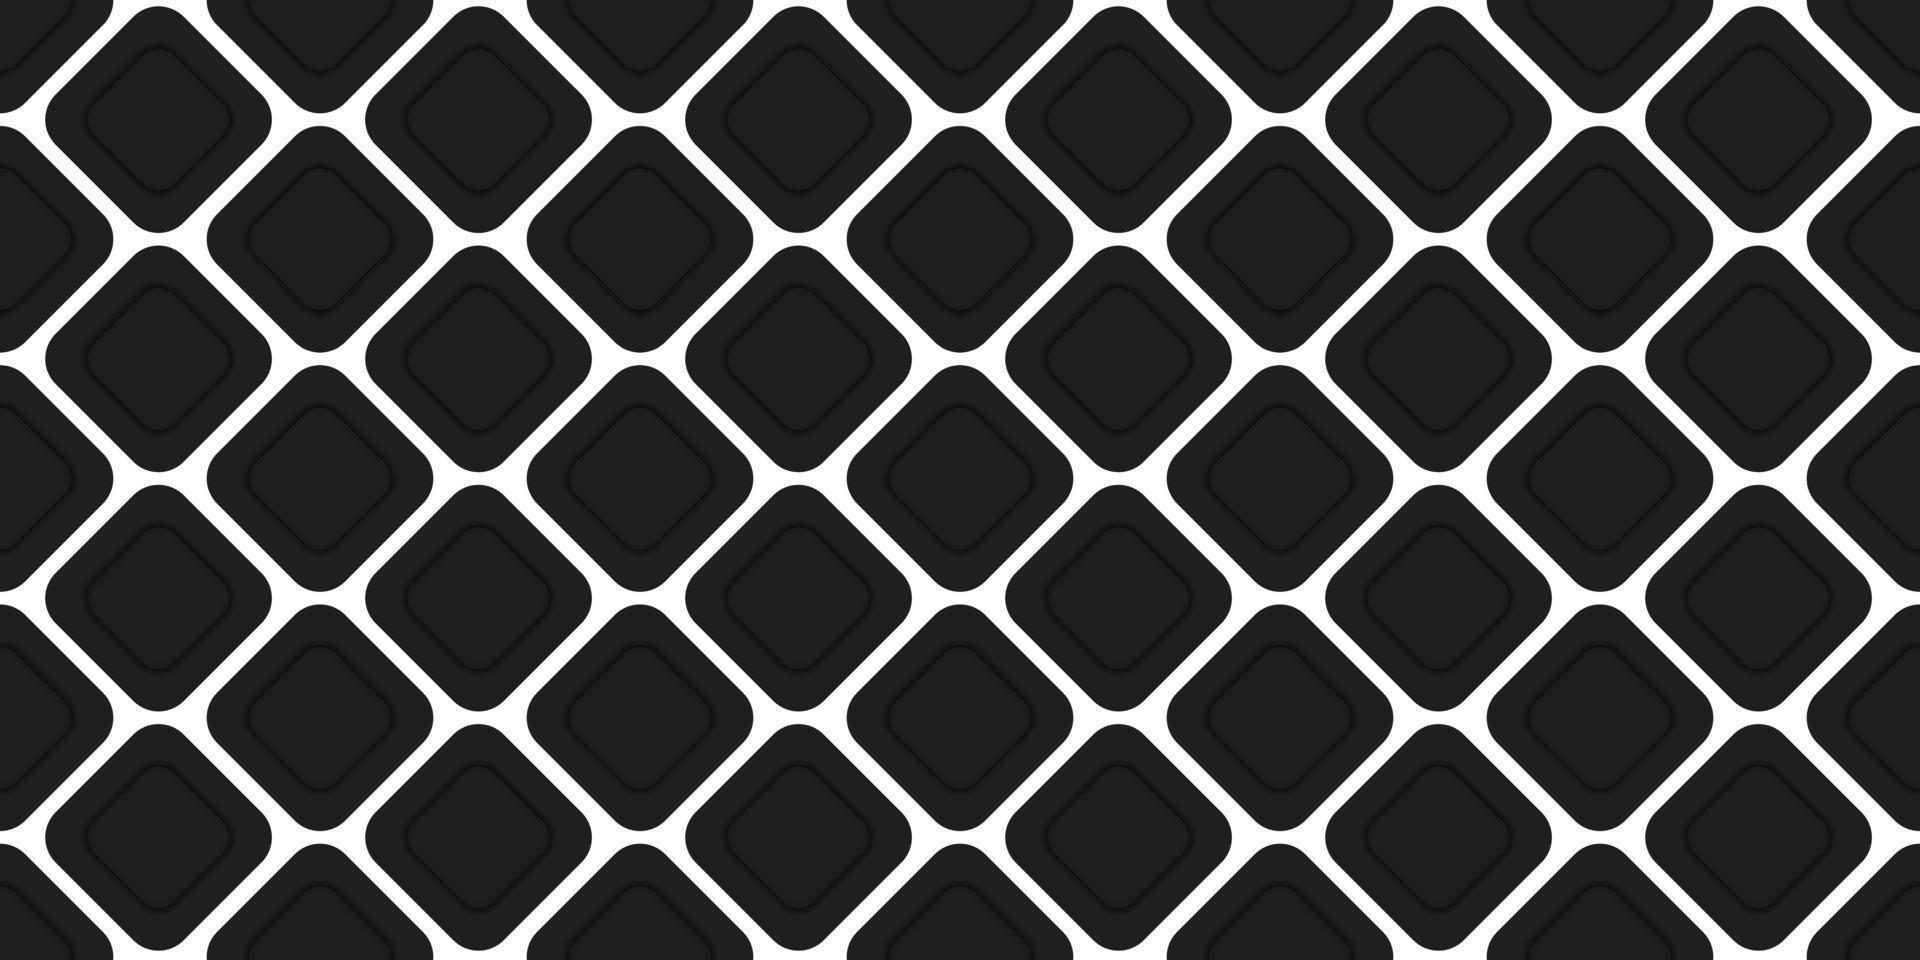 patrón de rombo blanco y negro transparente. decoración de textura geométrica moderna. tela de línea diagonal geométrica de estilo de moda. elegante fondo de rombos. diseño de papel tapiz abstracto. ilustración vectorial vector